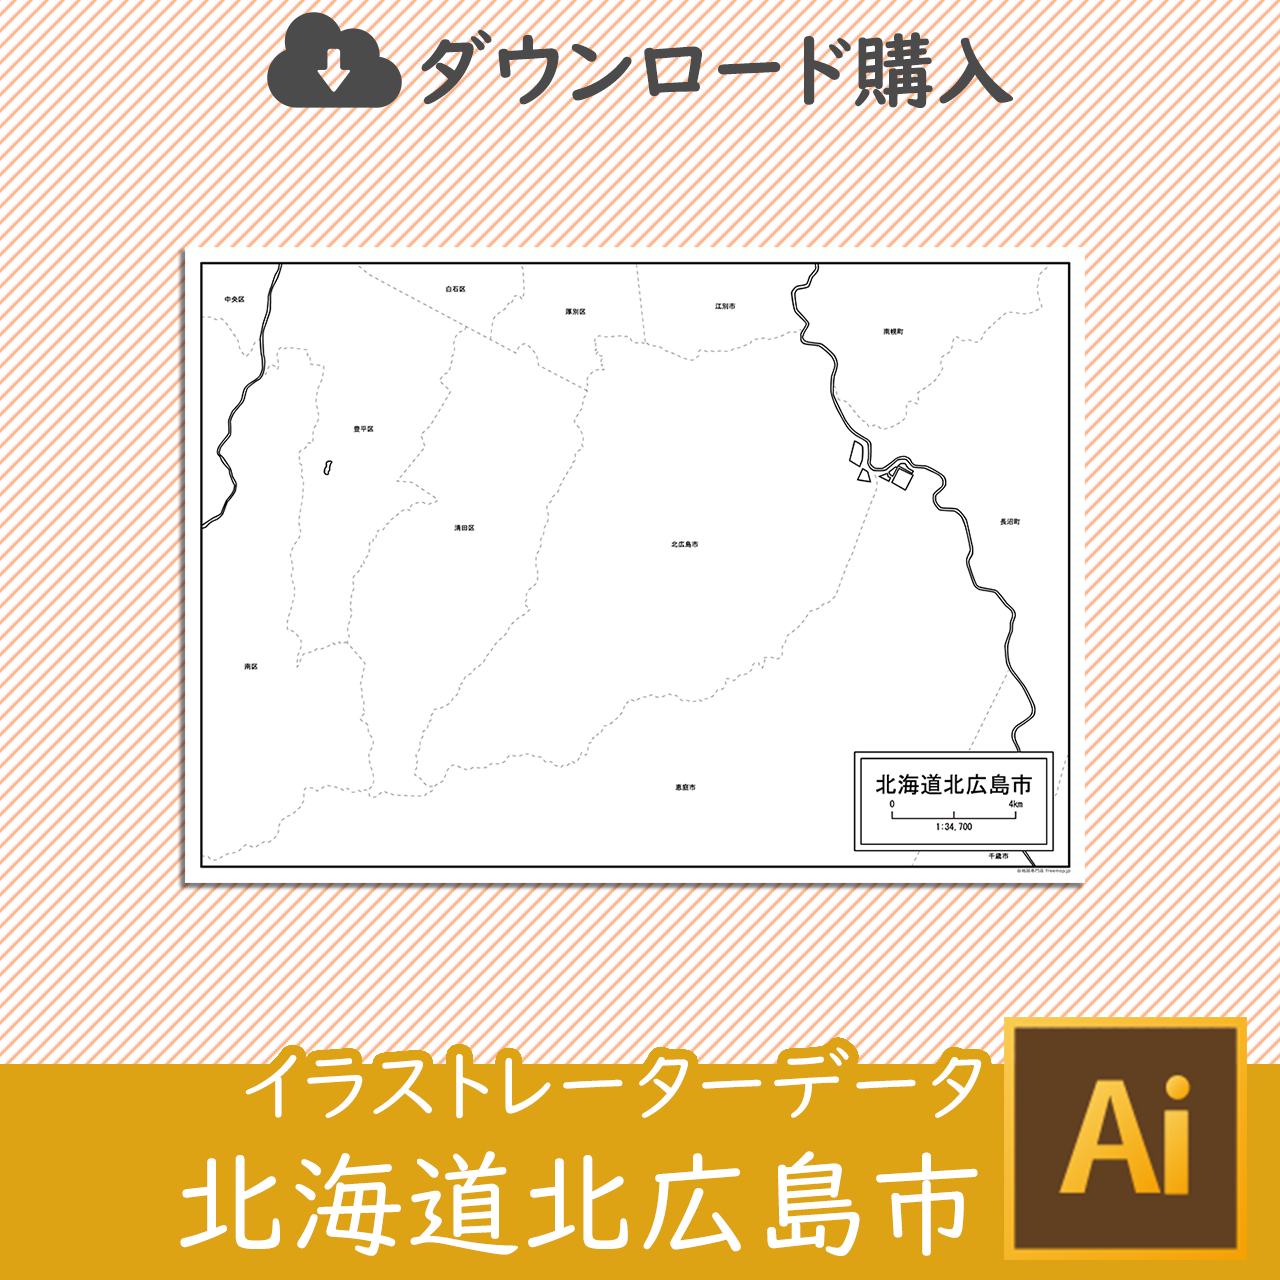 北広島市のaiデータのサムネイル画像